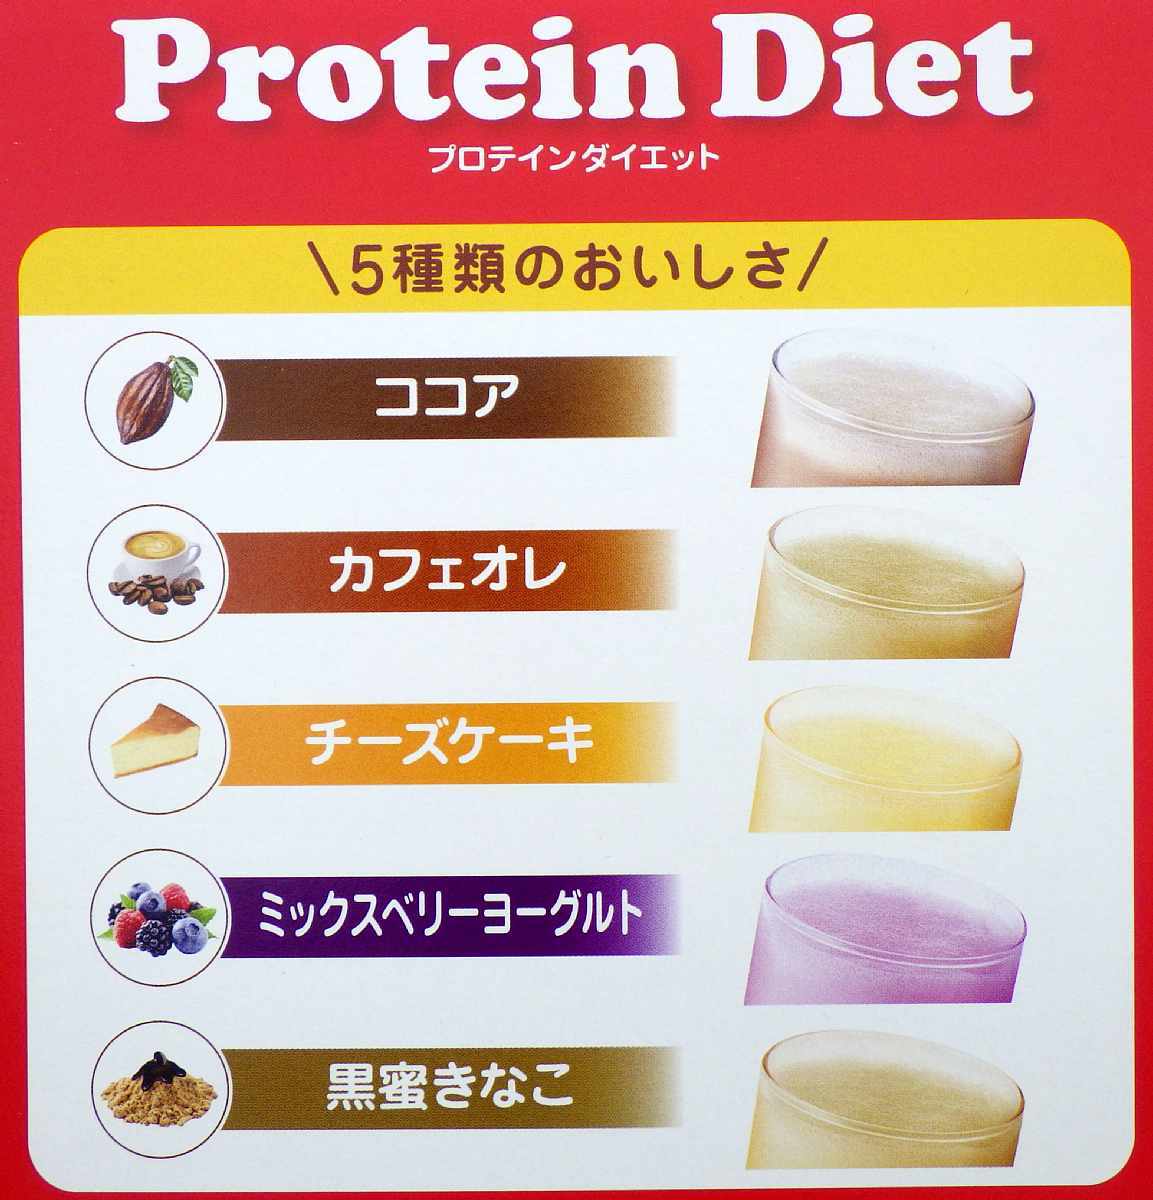 新品箱傷み ピルボックス プロテイン ダイエット プロポリスプラス 35食 5種×7食 プロポリス新配合&たんぱく質増量 pillbox Protein Diet_画像4